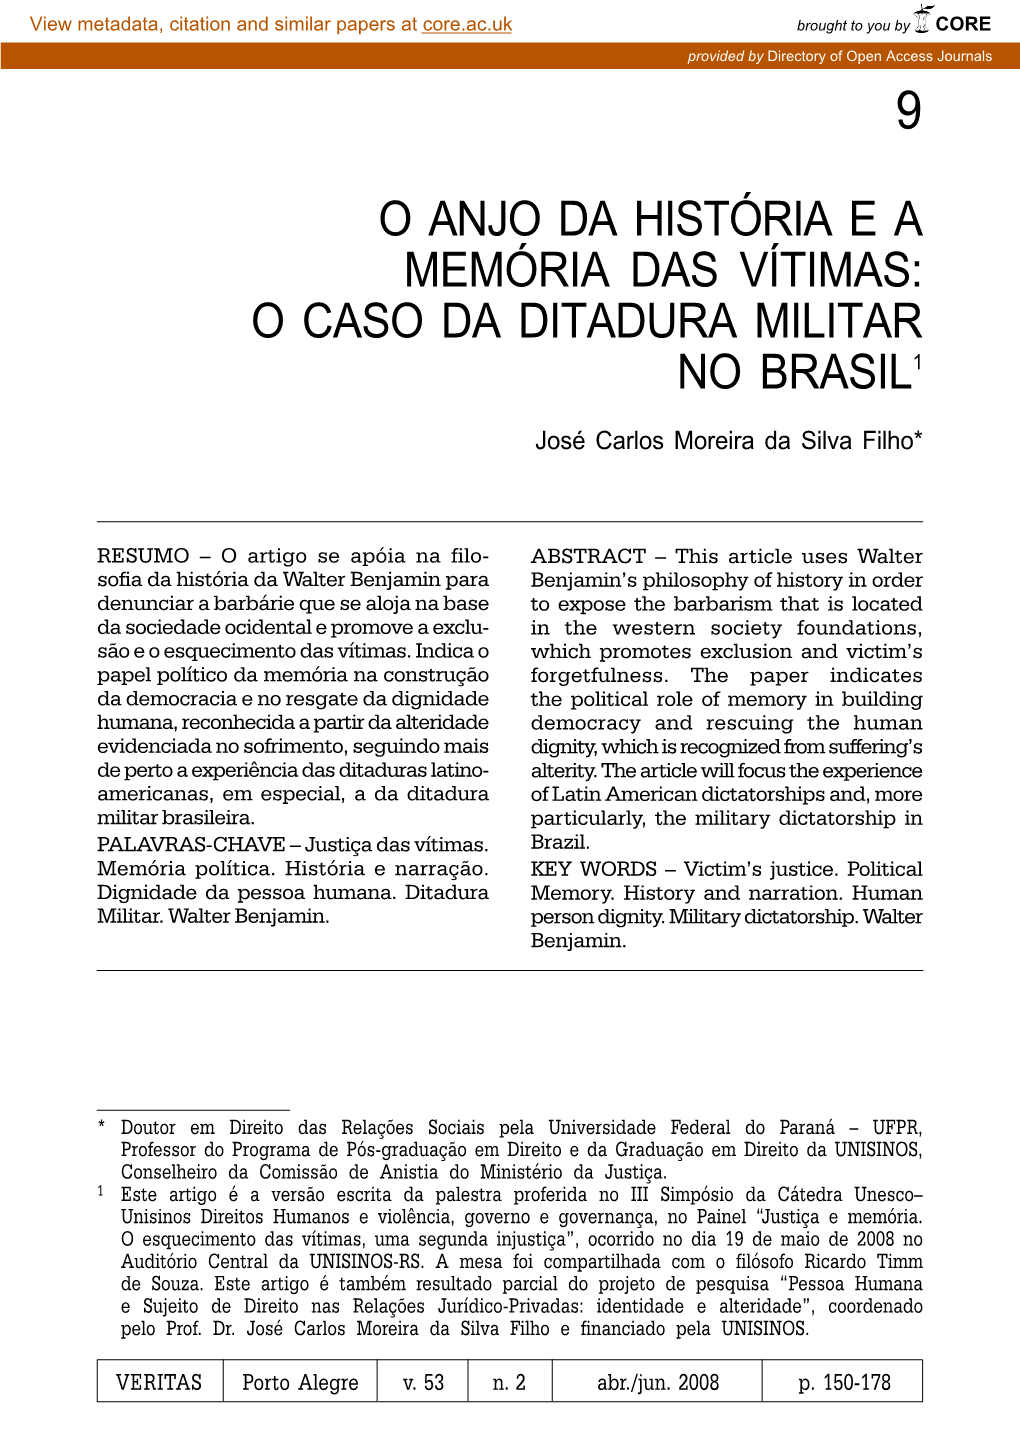 O Caso Da Ditadura Militar No Brasil1